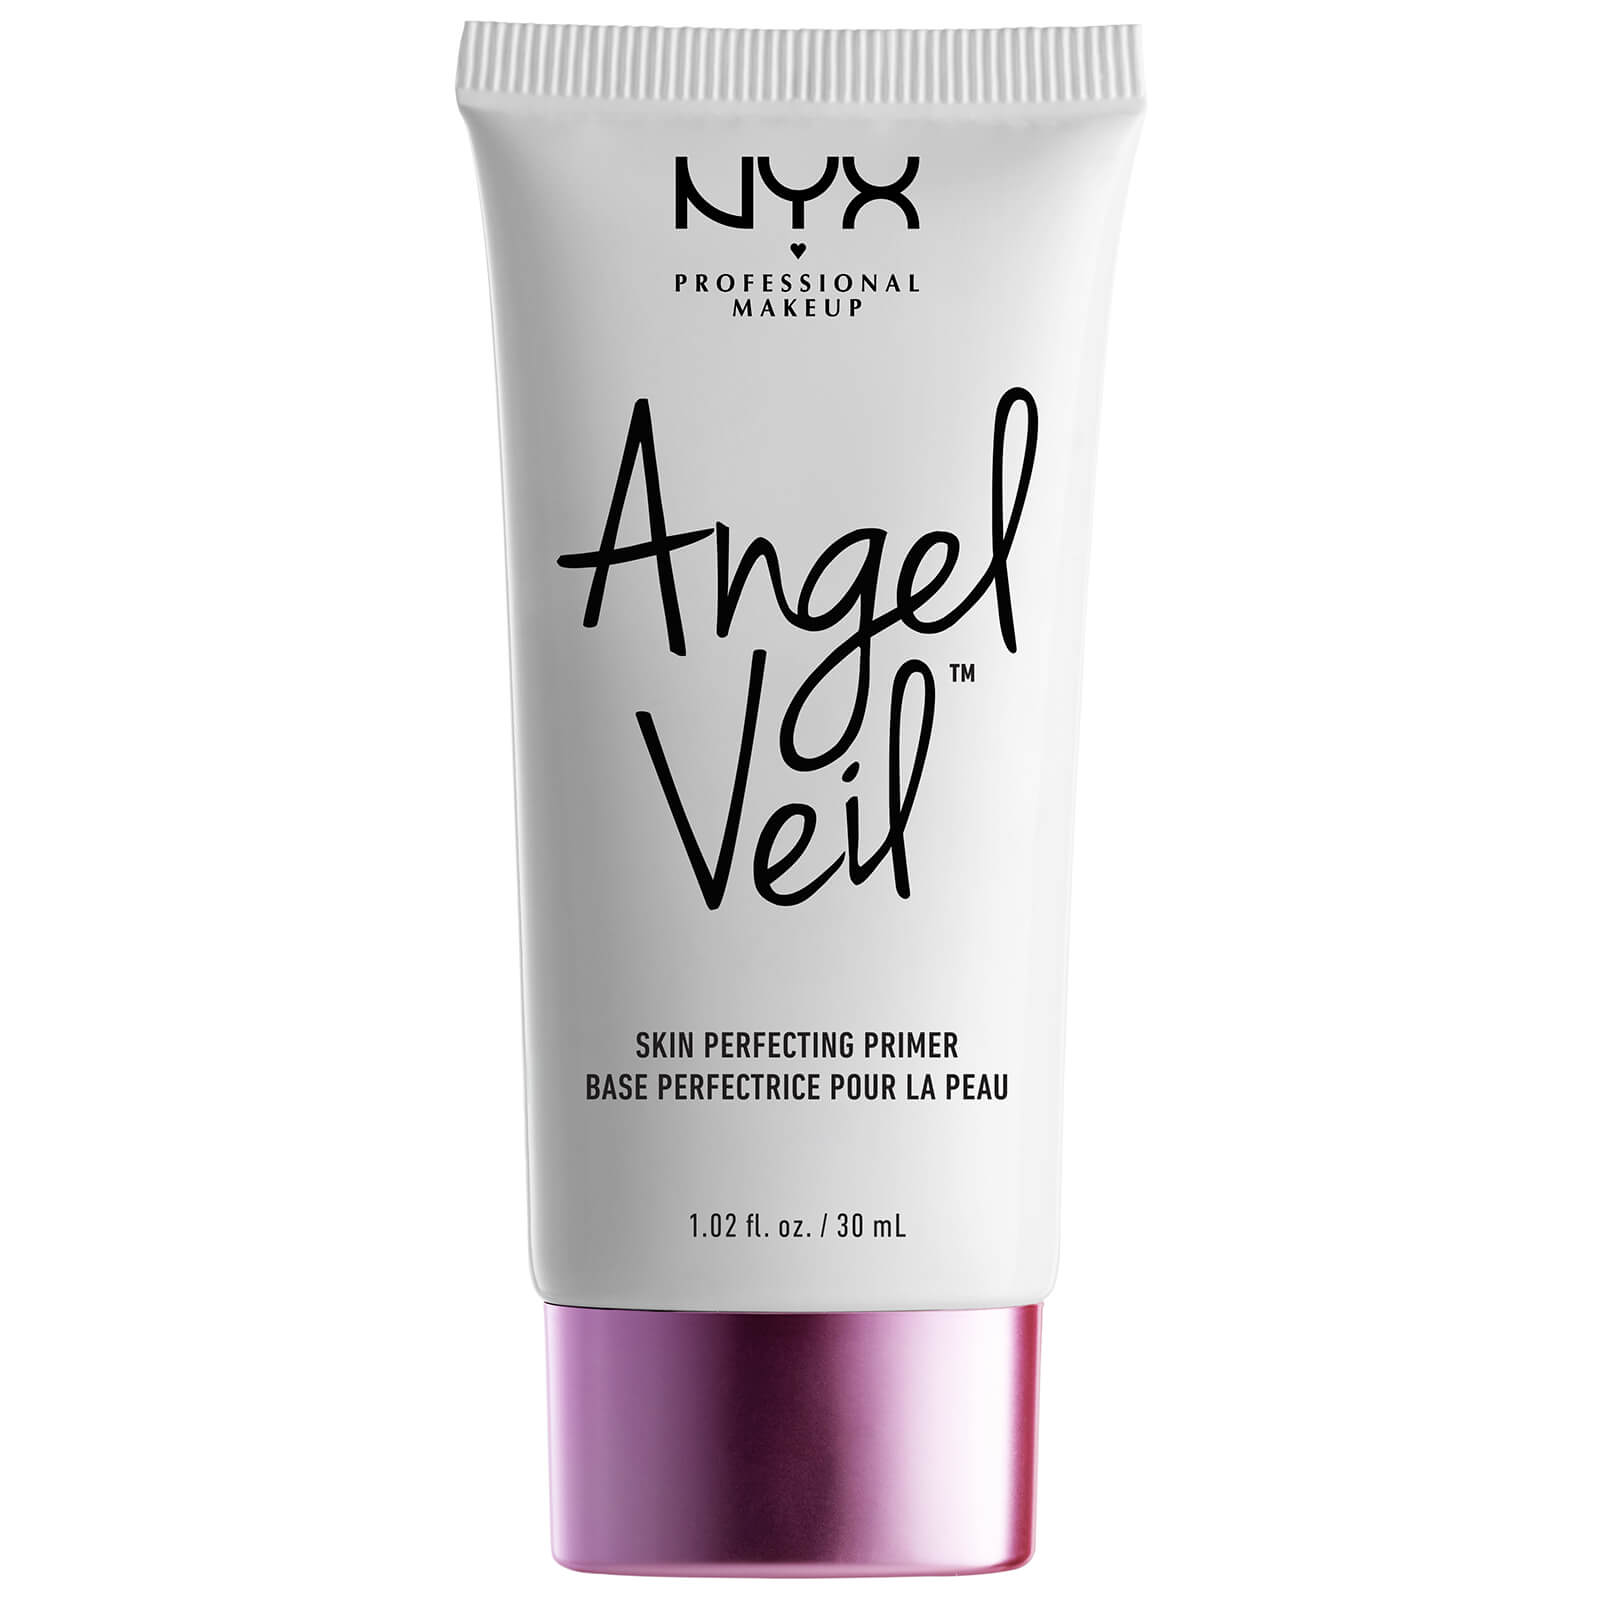 NYX Professional Makeup Angel Veil Skin Perfecting Primer kaufen Deutschland bestellen Preisvergleich Rabattcode Coupon Code